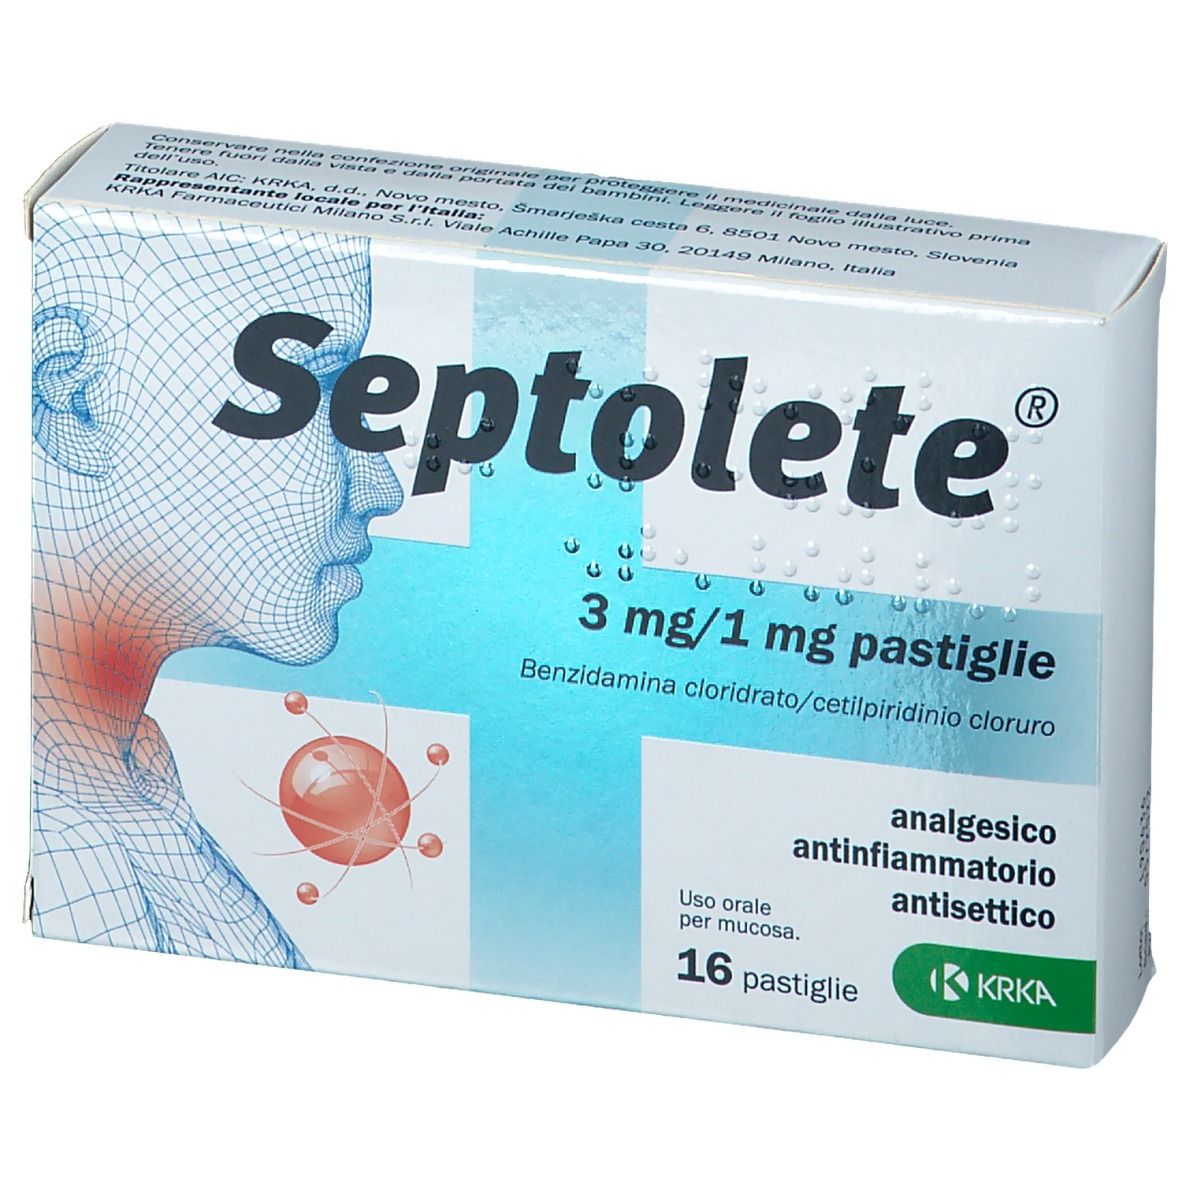 Septolete - 3 Mg/1 Mg Pastiglie 16 Pastiglie In Blister Pvc/pe/pcdc/al